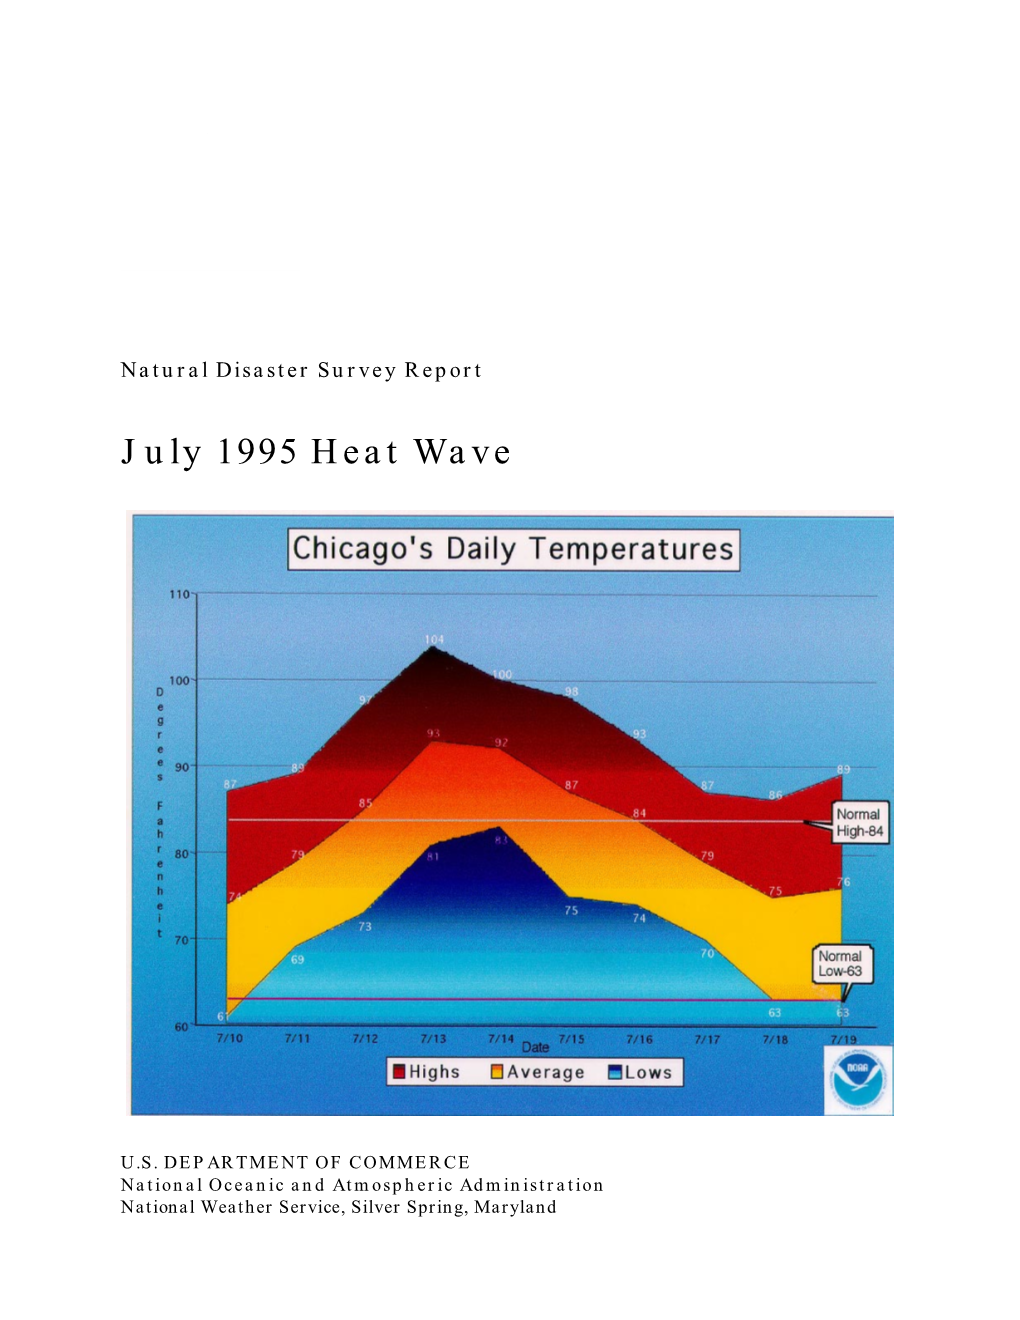 Heat Wave of July 1995